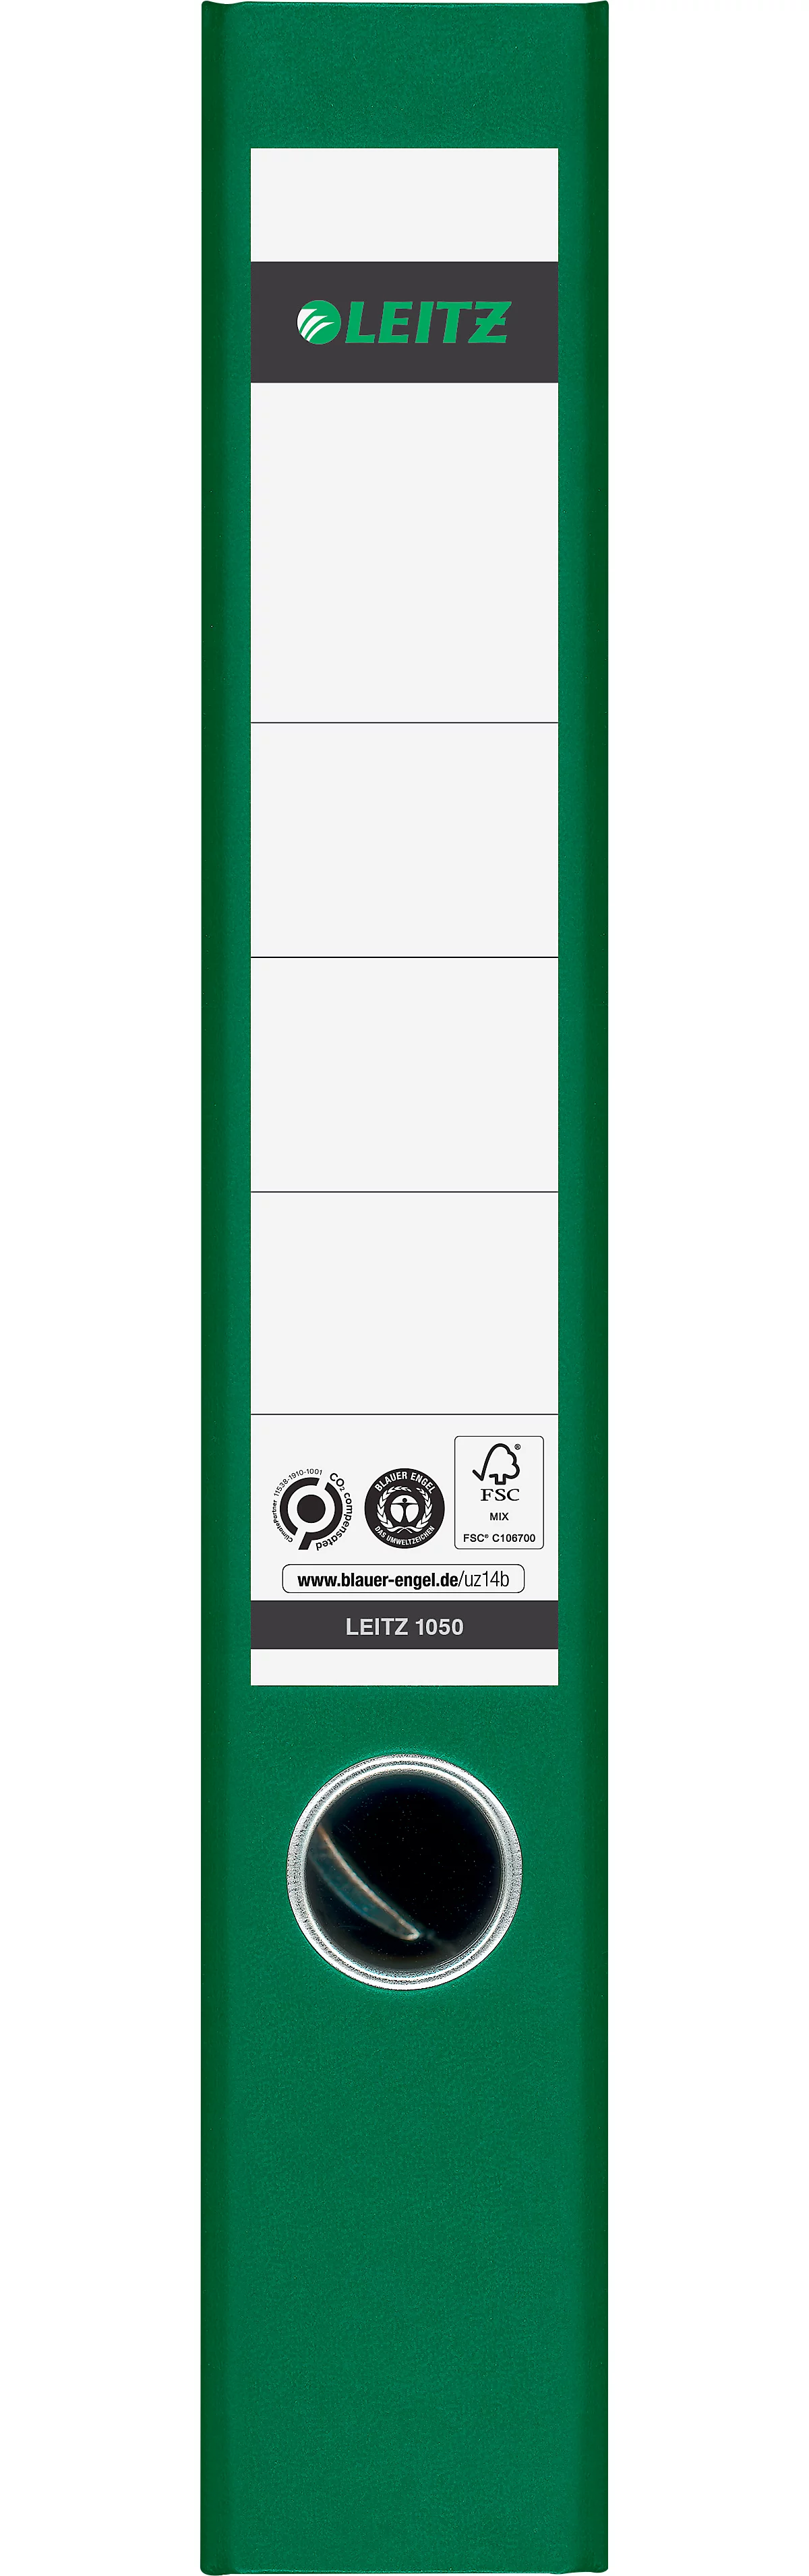 Carpeta LEITZ®1050, DIN A4, ancho de lomo 52 mm, agujero para los dedos, etiqueta de lomo pegada, clima neutro, cartón duro, 20 unidades, verde